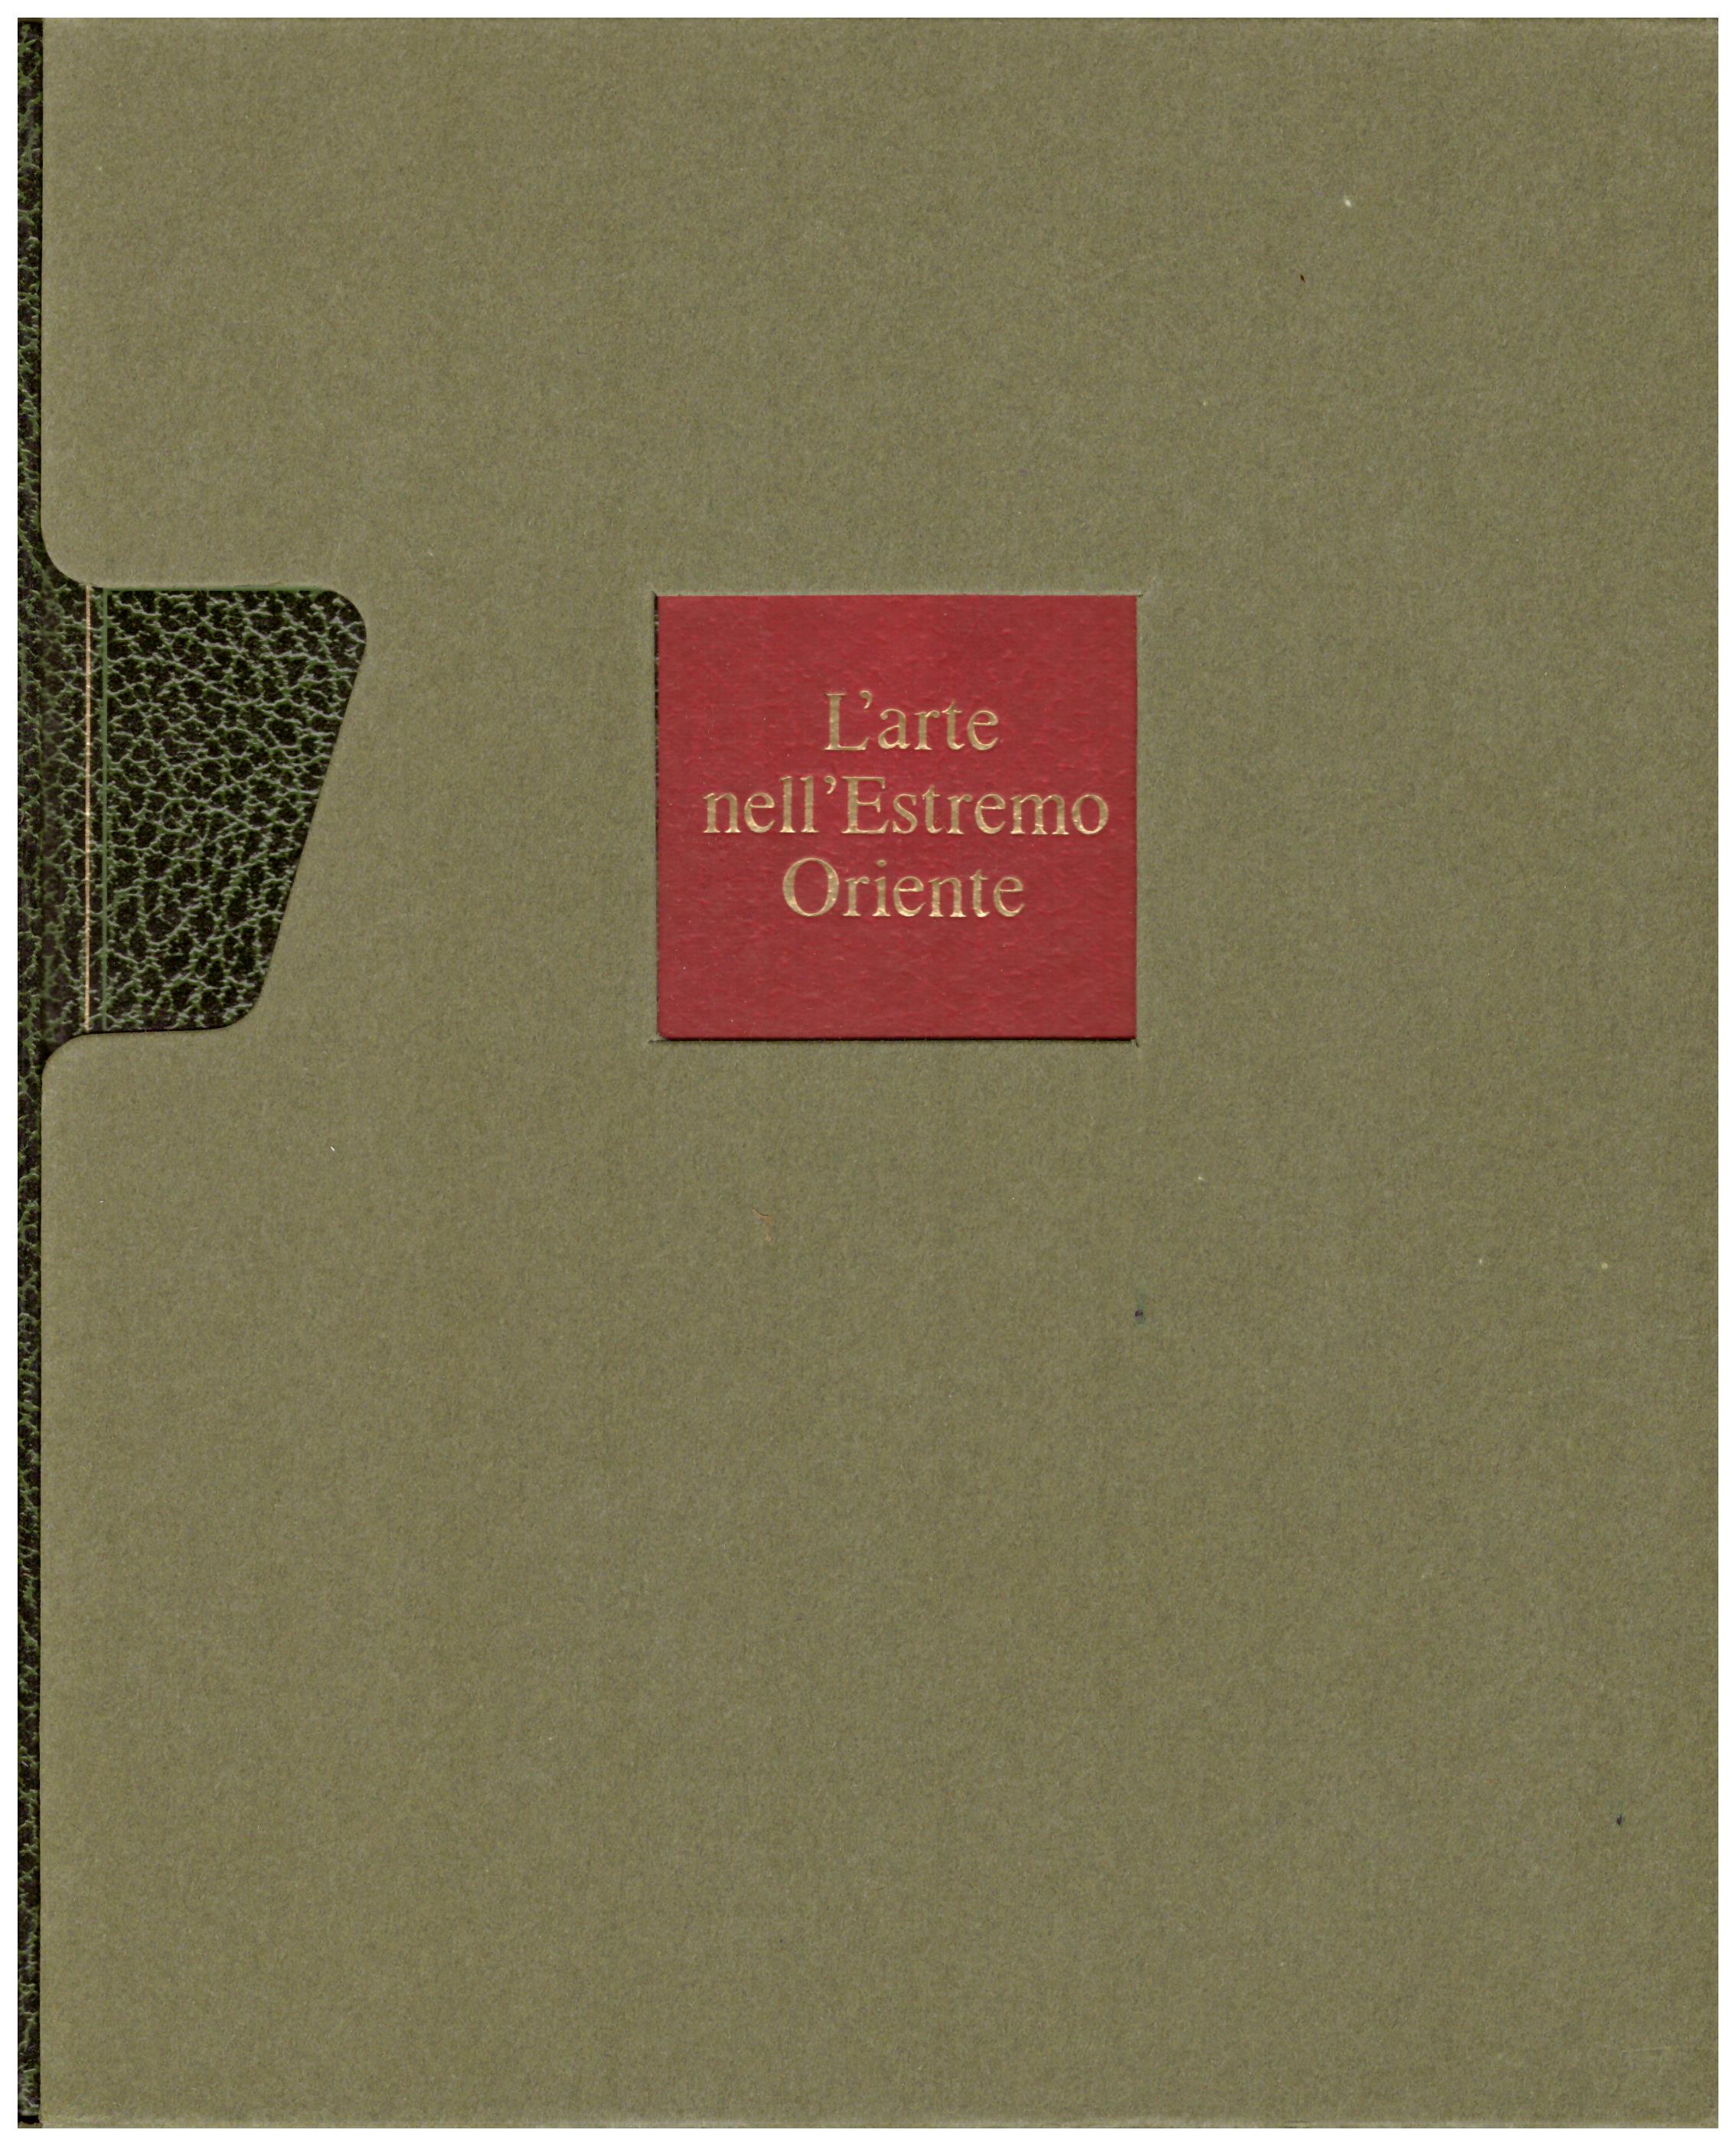 Titolo: L'arte nel mondo n.8 L'arte nell'estremo oriente Autore: Hugo Musterberg  Editore: Rizzoli, 1970